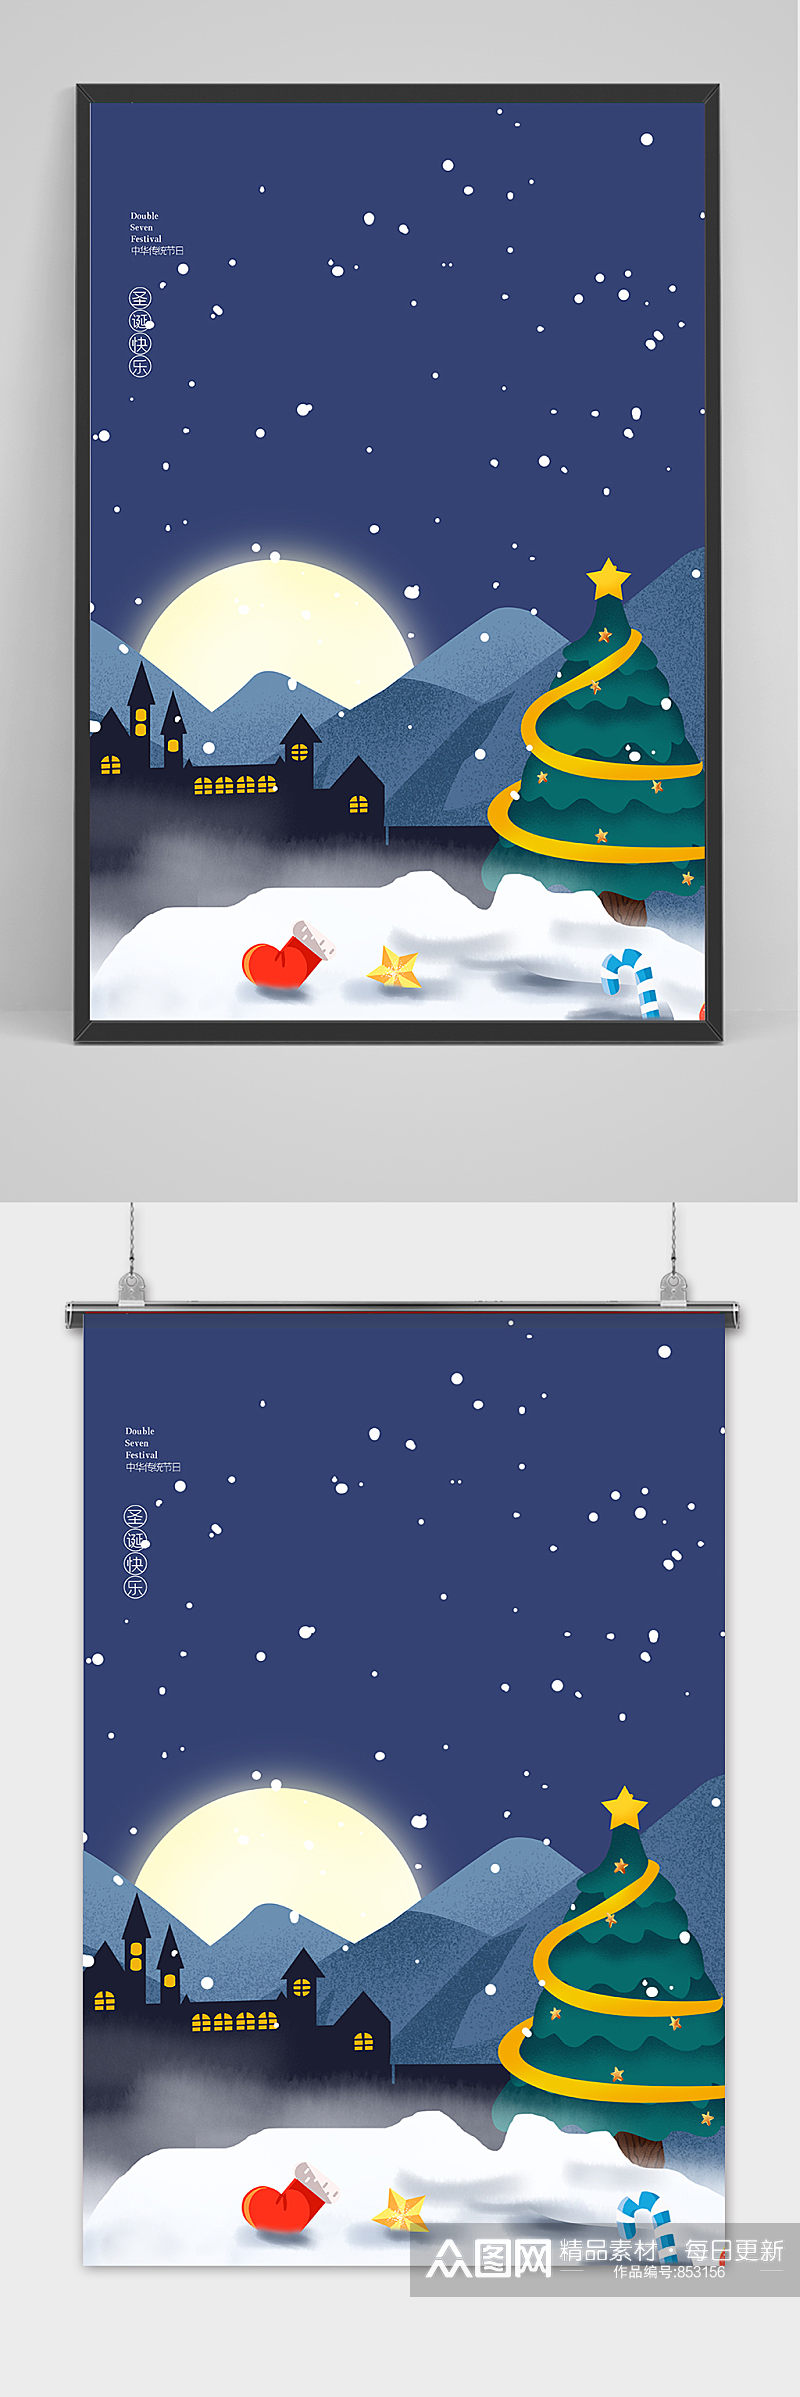 蓝色雪景创意卡通风圣诞节海报背景素材